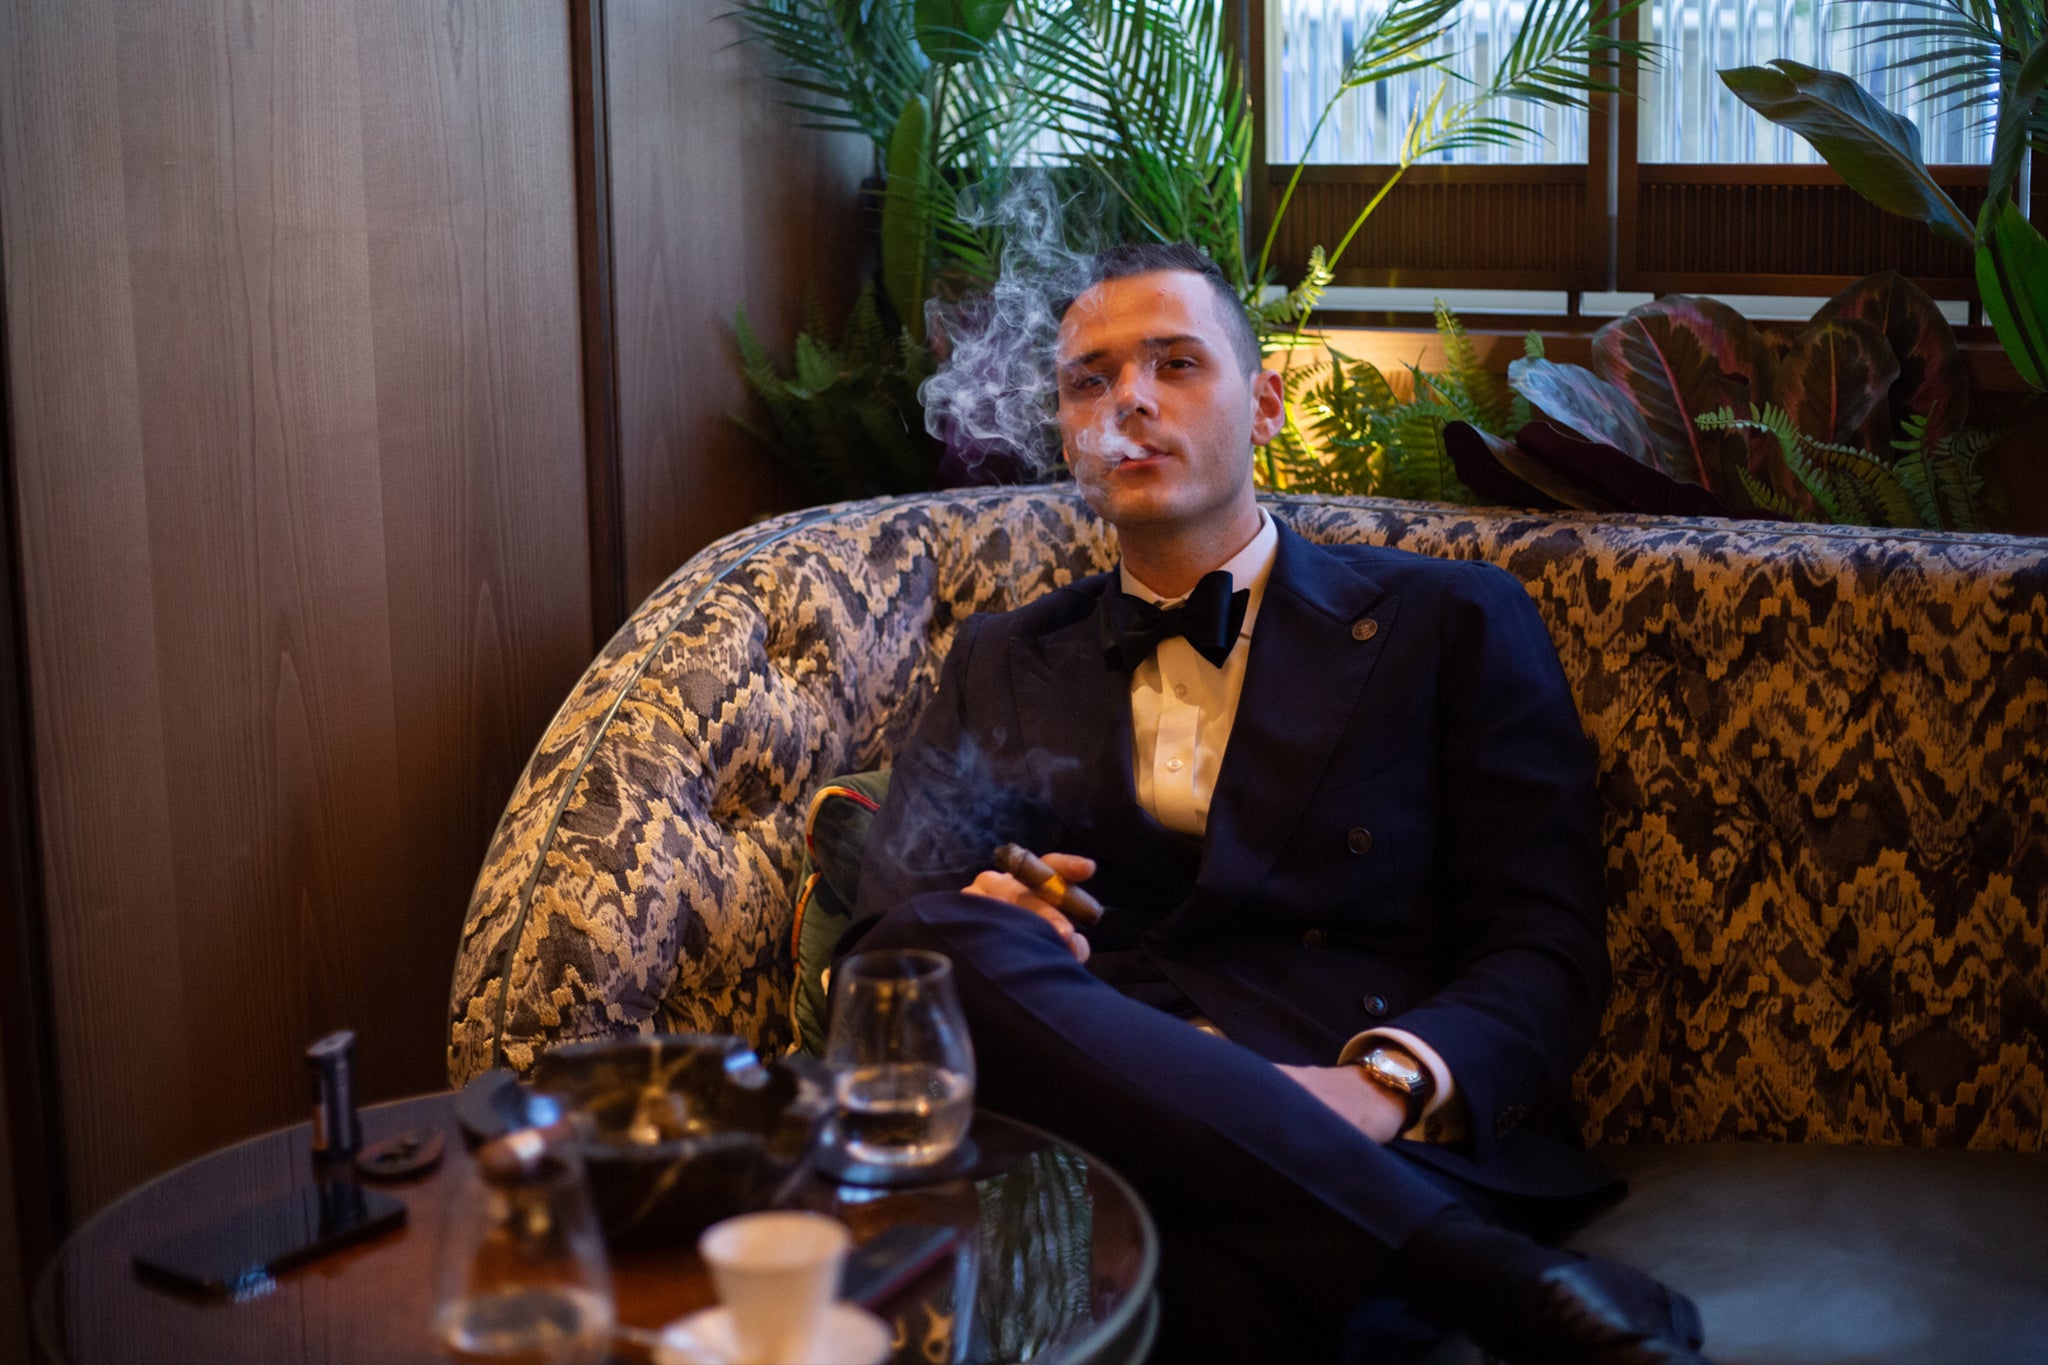 Giuliano Santilli enjoys a cigar at Oscuro, The Arts Club.